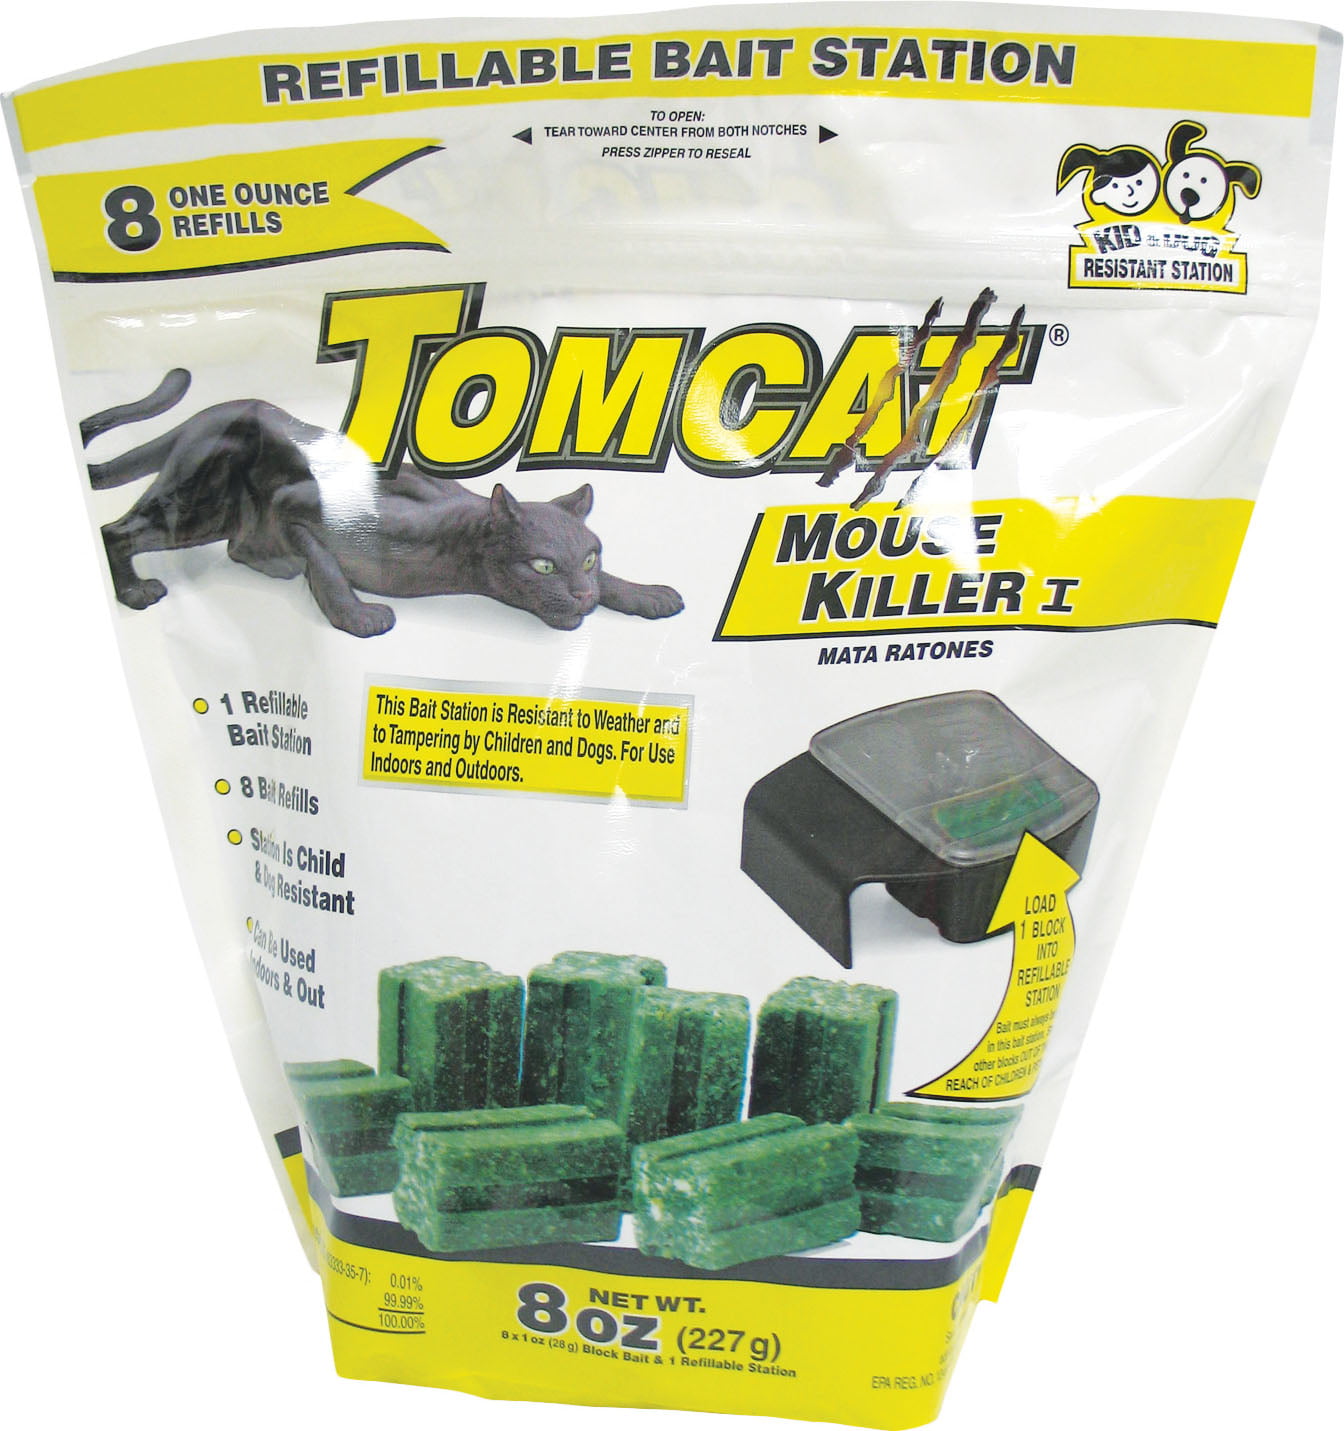 Motomco Ltd DTomcat Mouse Killer I Refillable Bait Station 8 Refills